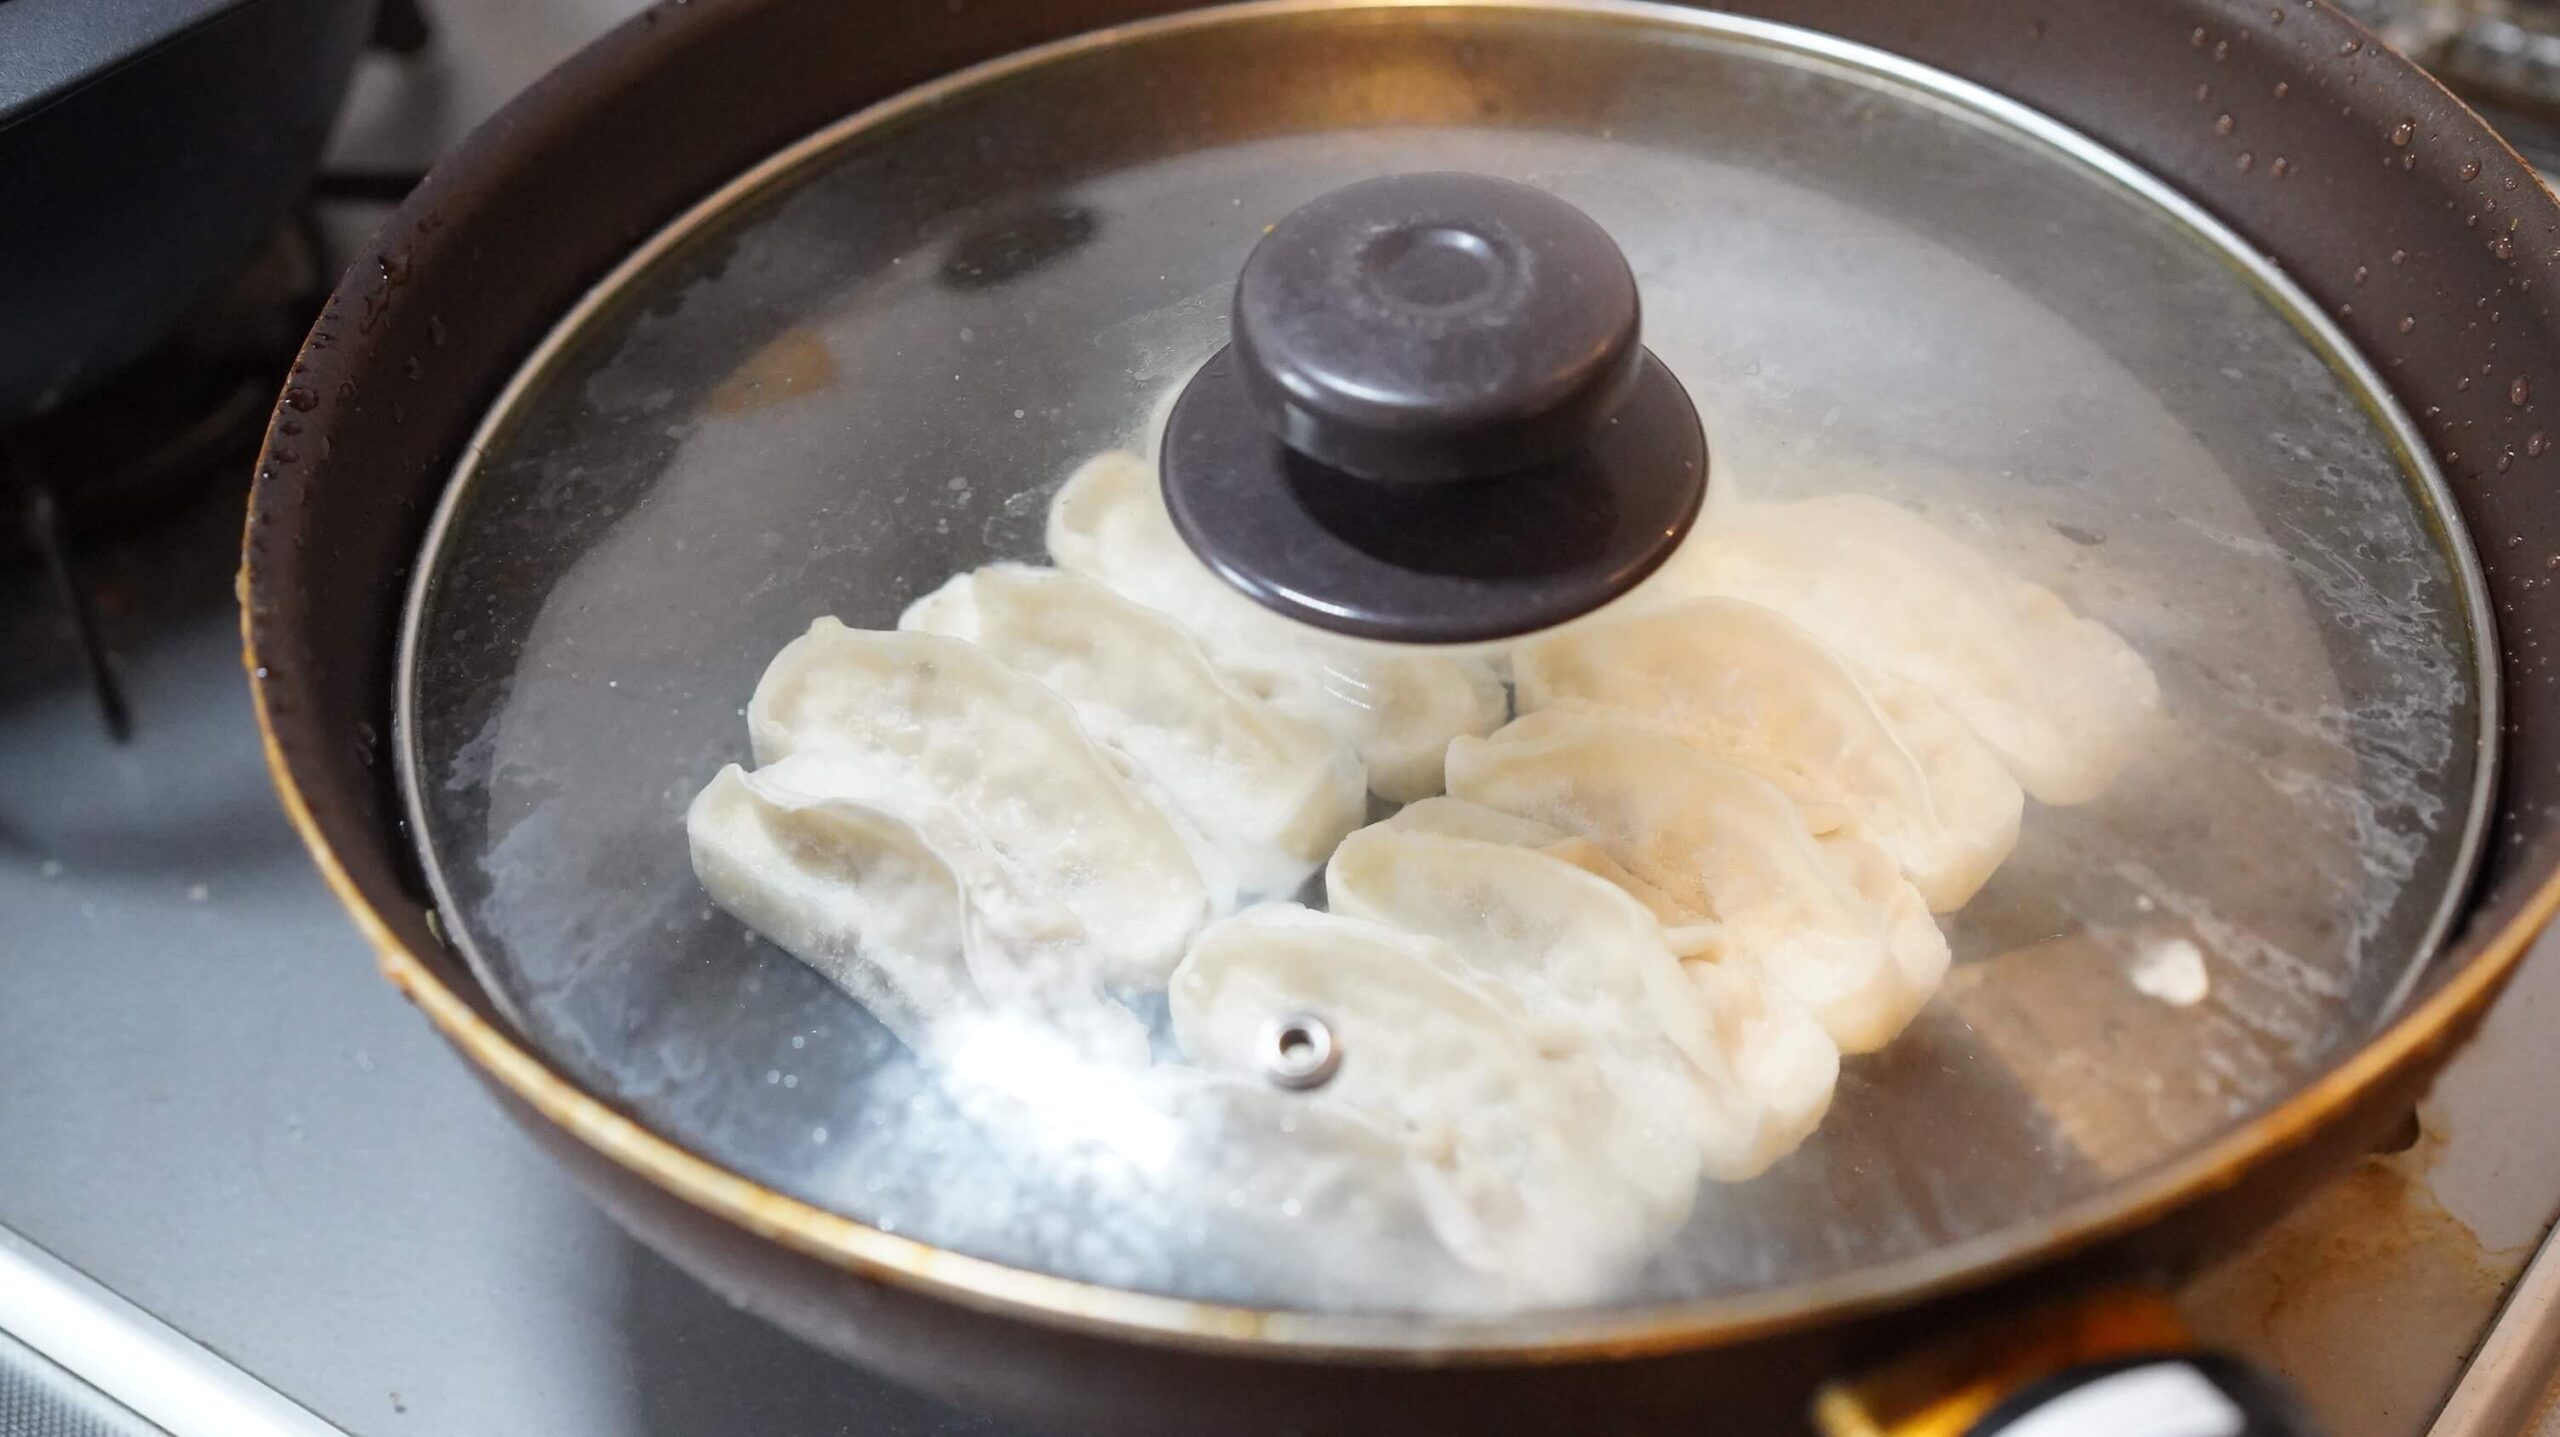 味の素の冷凍食品「生姜好きのためのギョーザ」をフライパンで焼いている写真